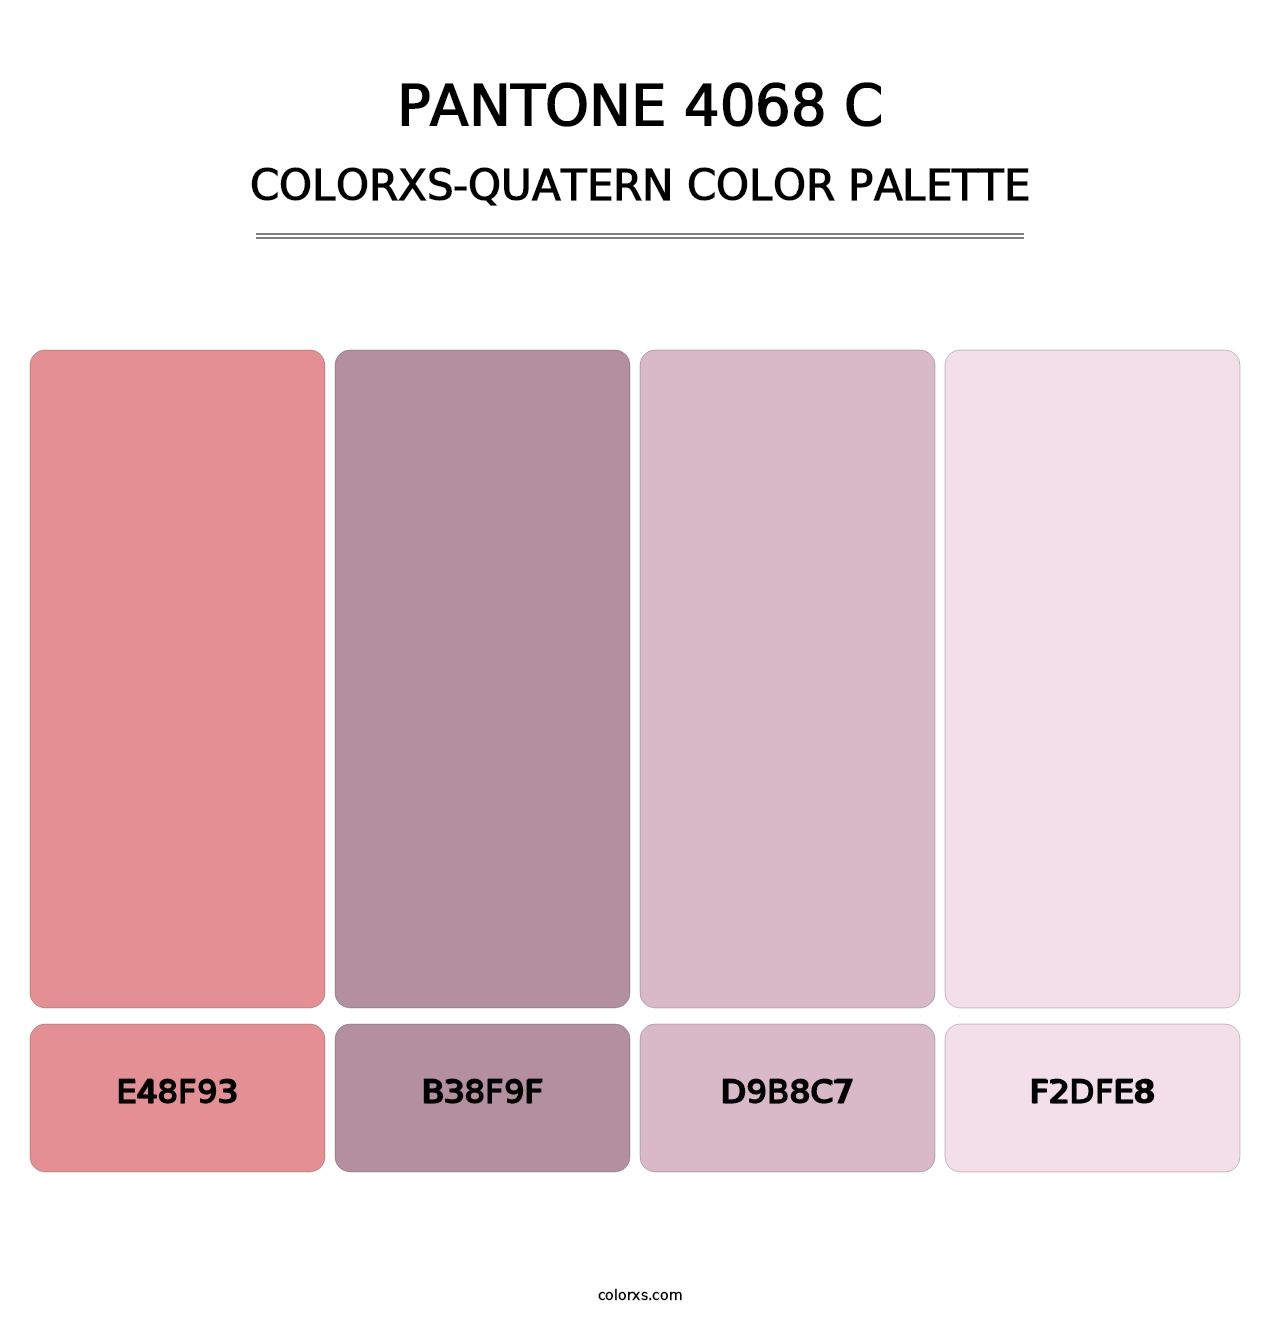 PANTONE 4068 C - Colorxs Quatern Palette